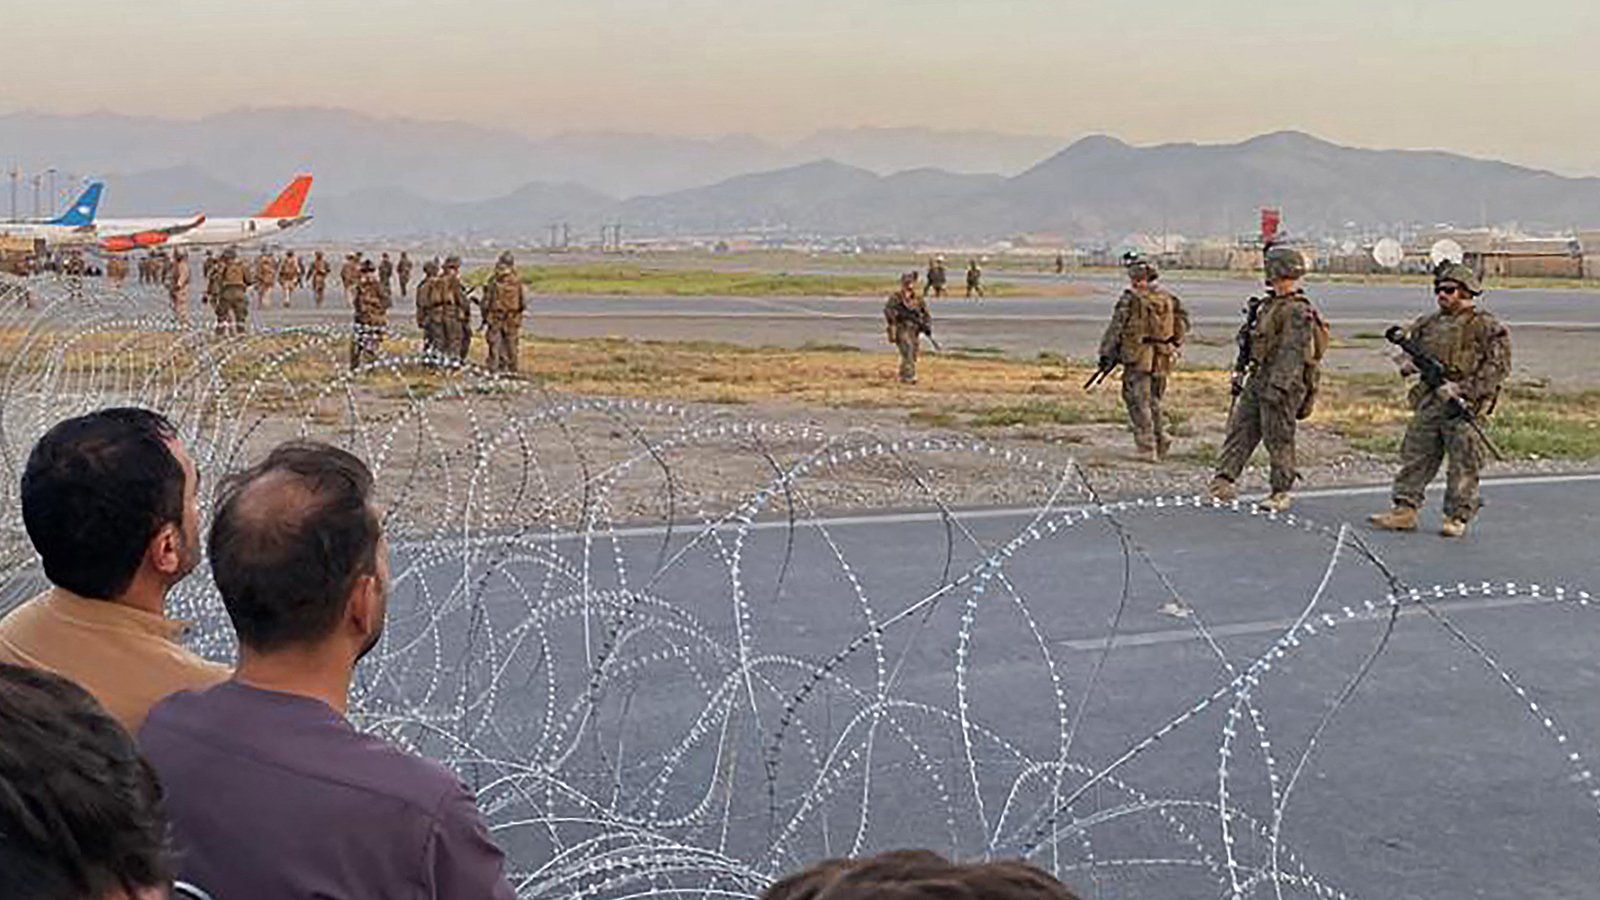  Schimb de focuri în care au fost implicate forţe afgane, americane şi germane, pe aeroportul din Kabul